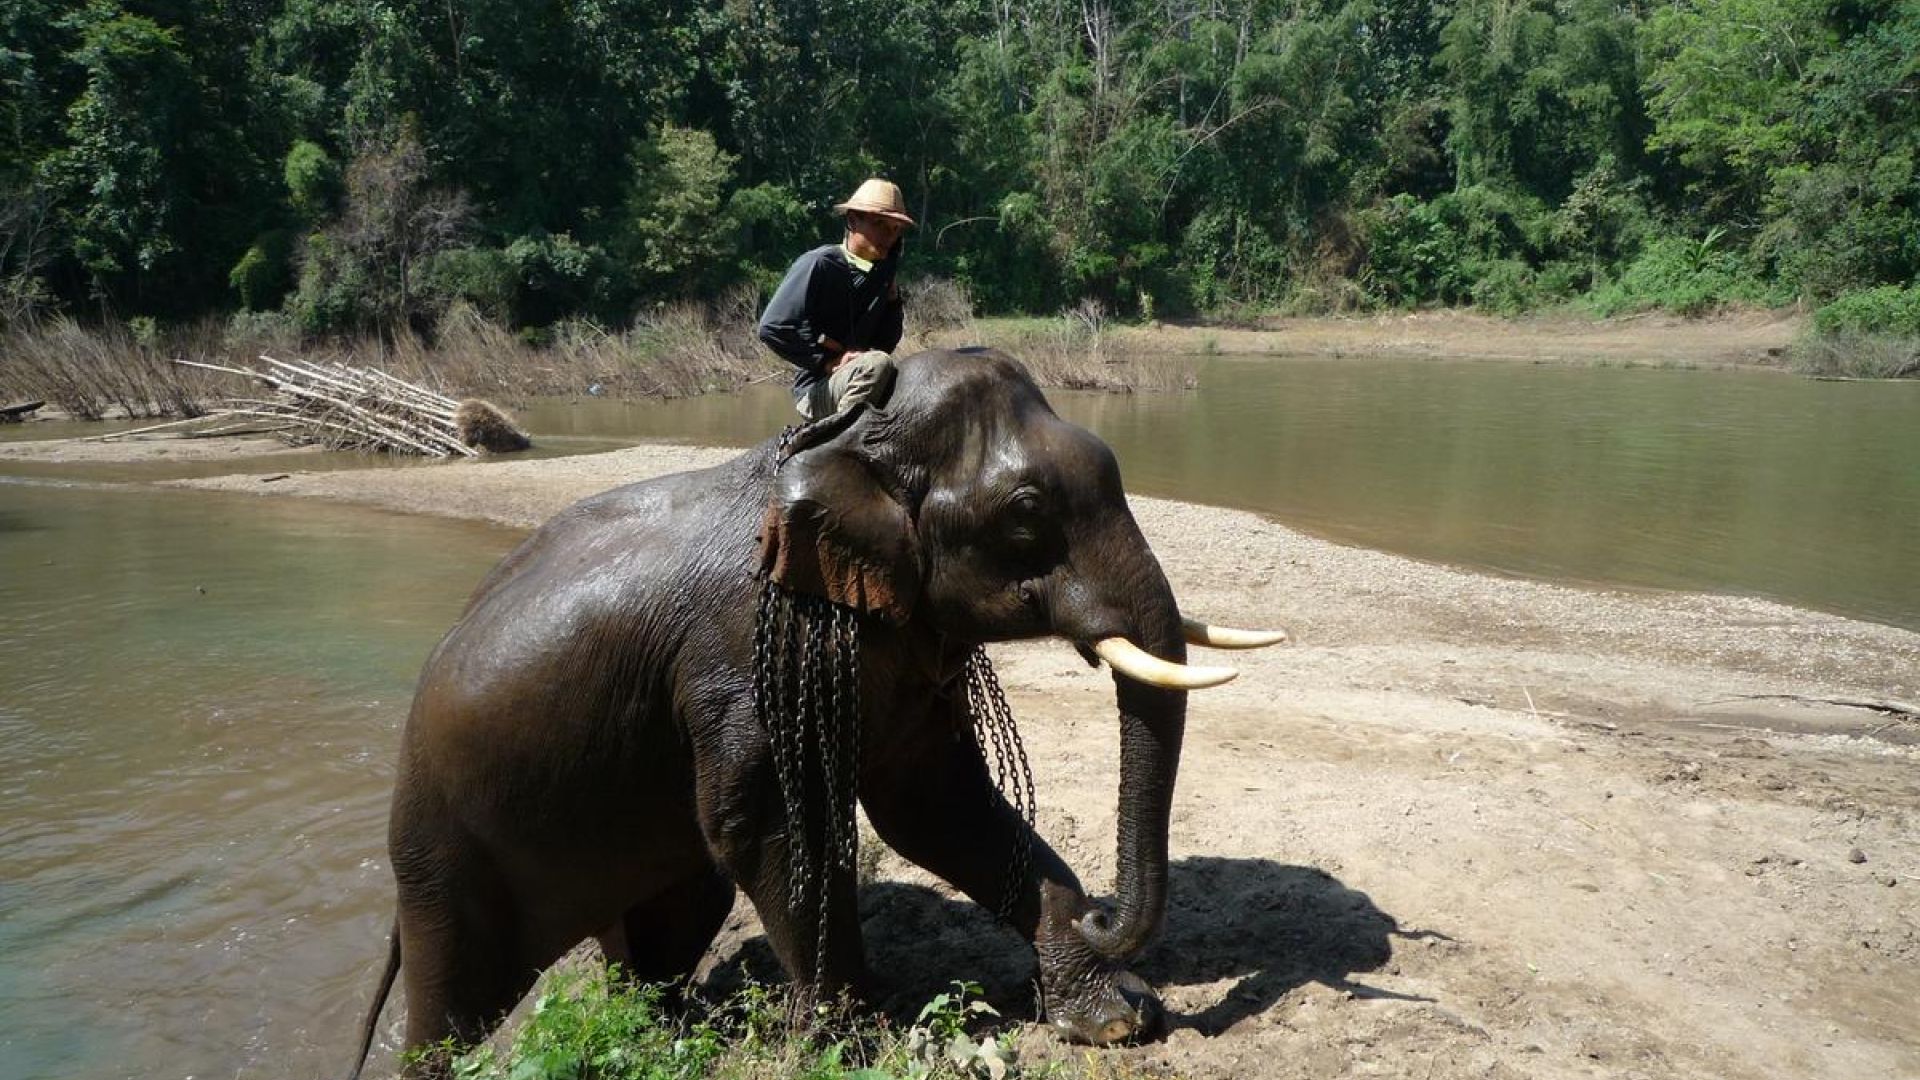 Elefant i Thailand